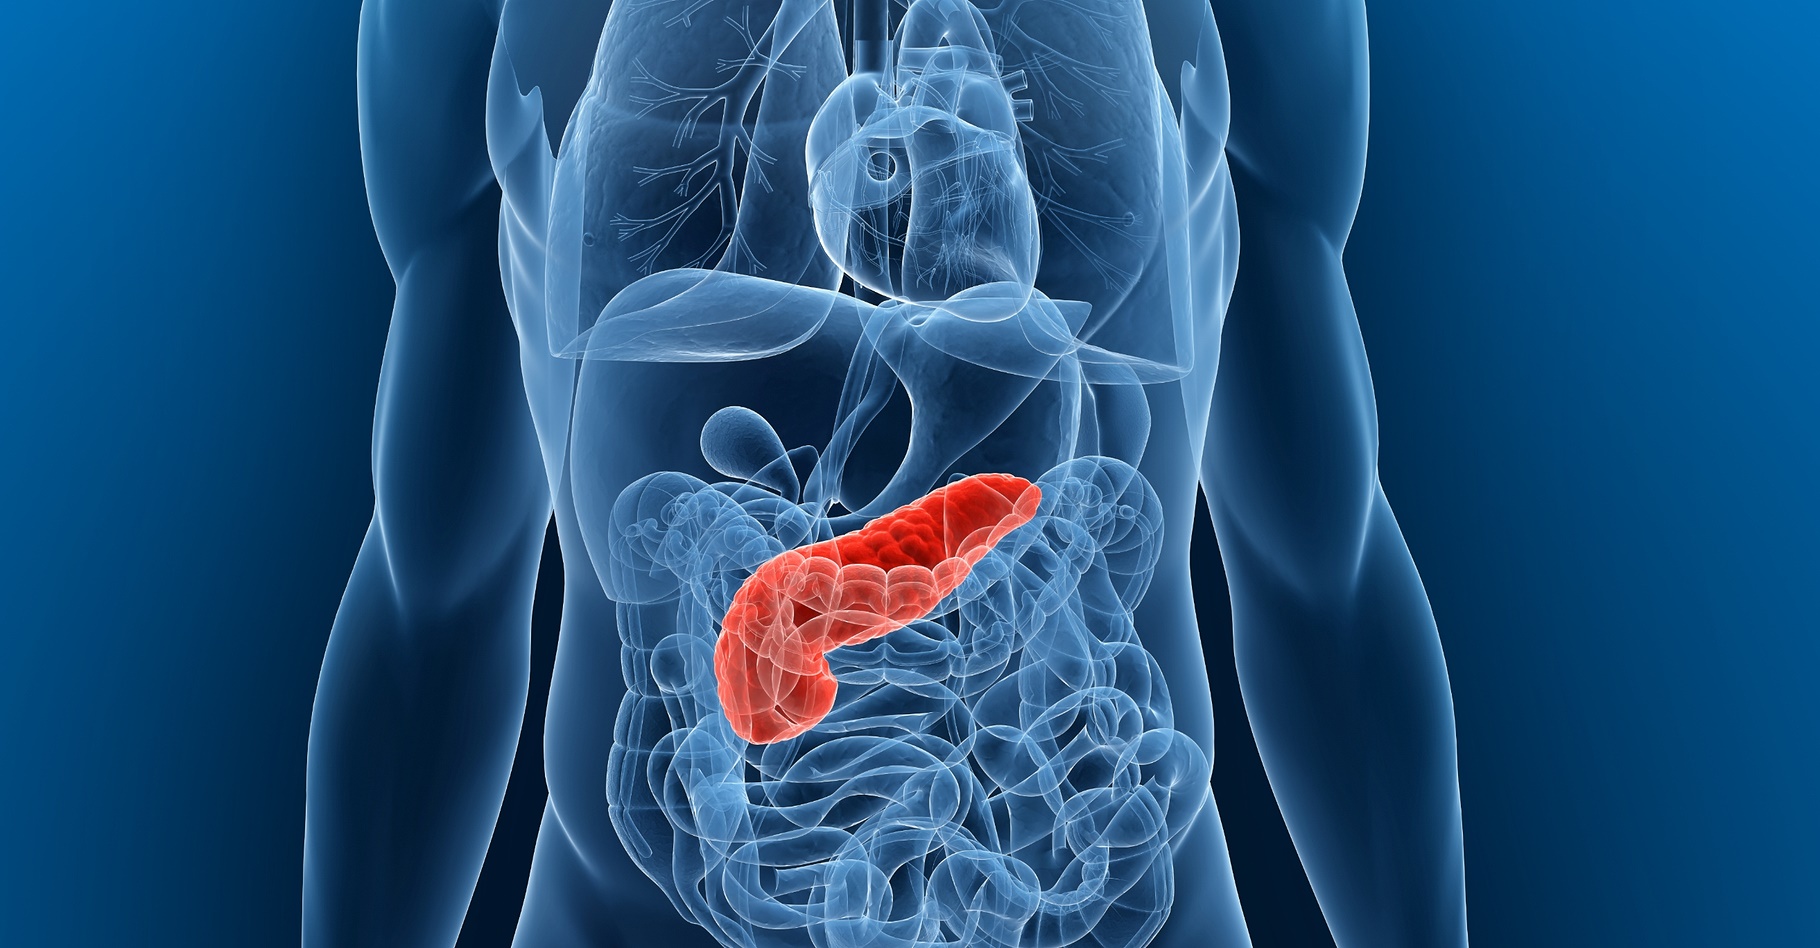 Le cancer du pancréas touche le pancréas, un organe situé derrière l’estomac qui produit des enzymes digestives et des hormones (insuline). © Sebastian Kaulitzki, Shutterstock